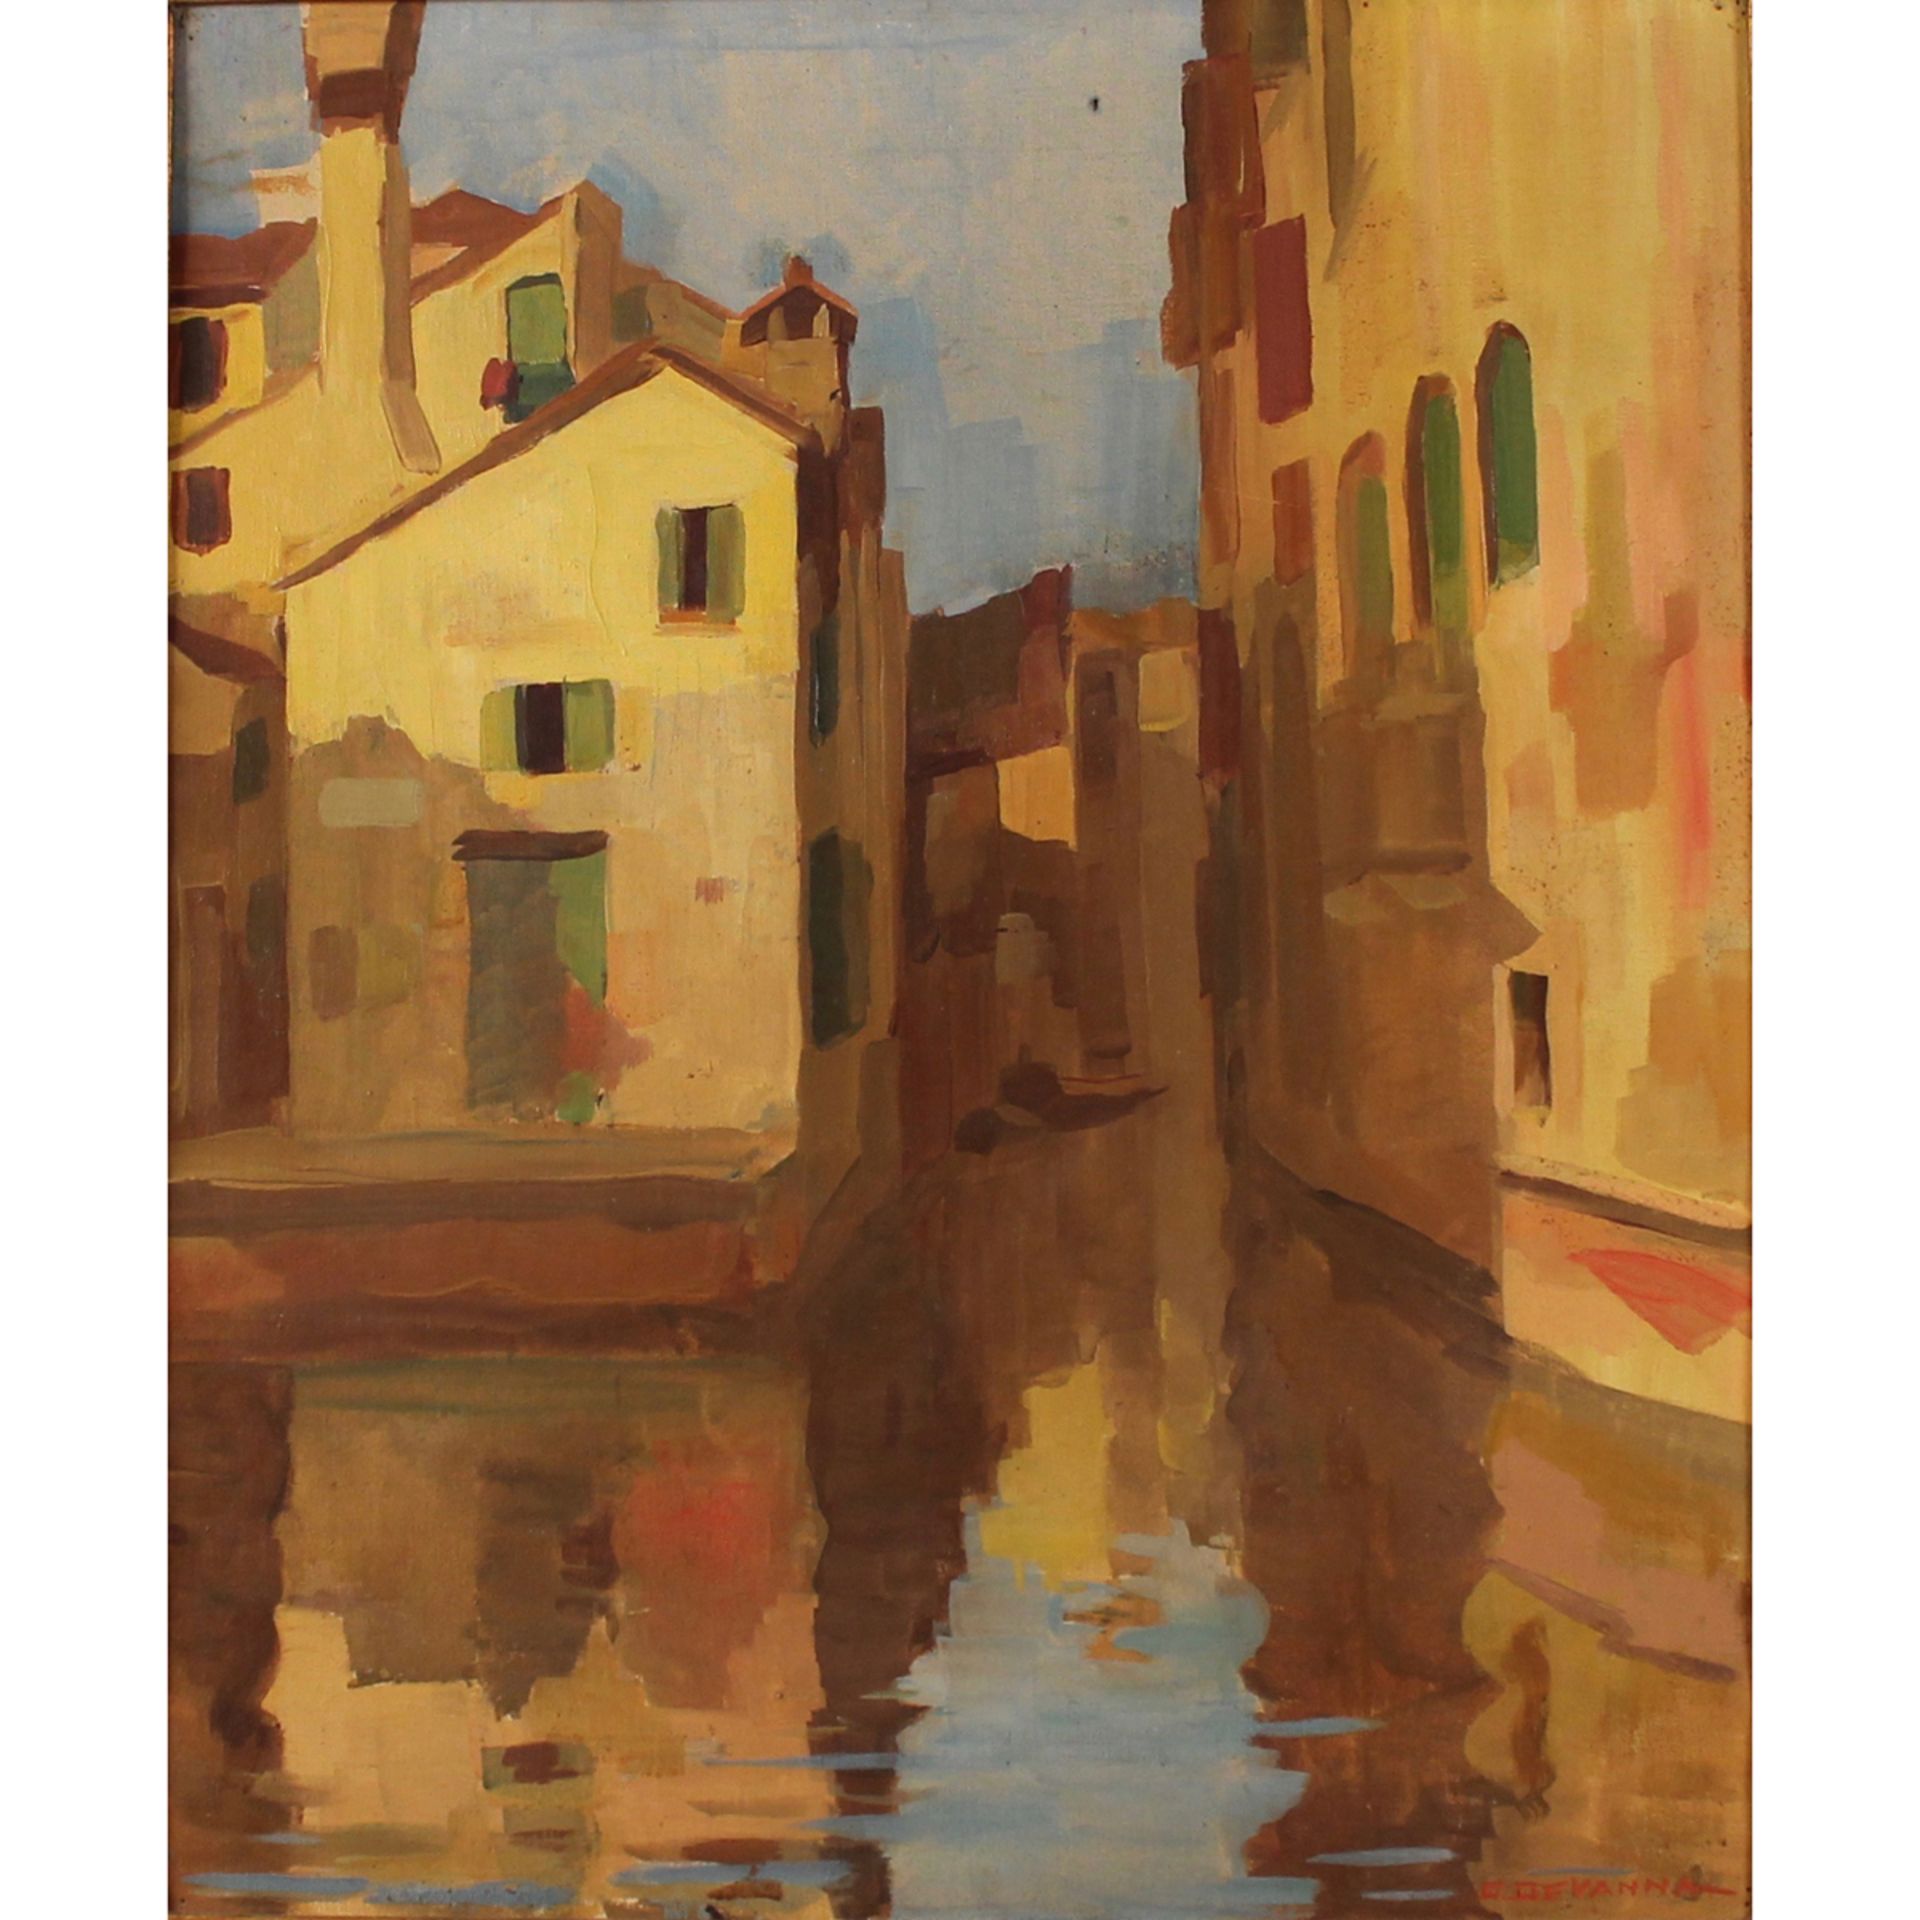 DOMENICO DEVANNA (1896-1980) "Scorcio di Venezia" - "Glimpse of Venice"